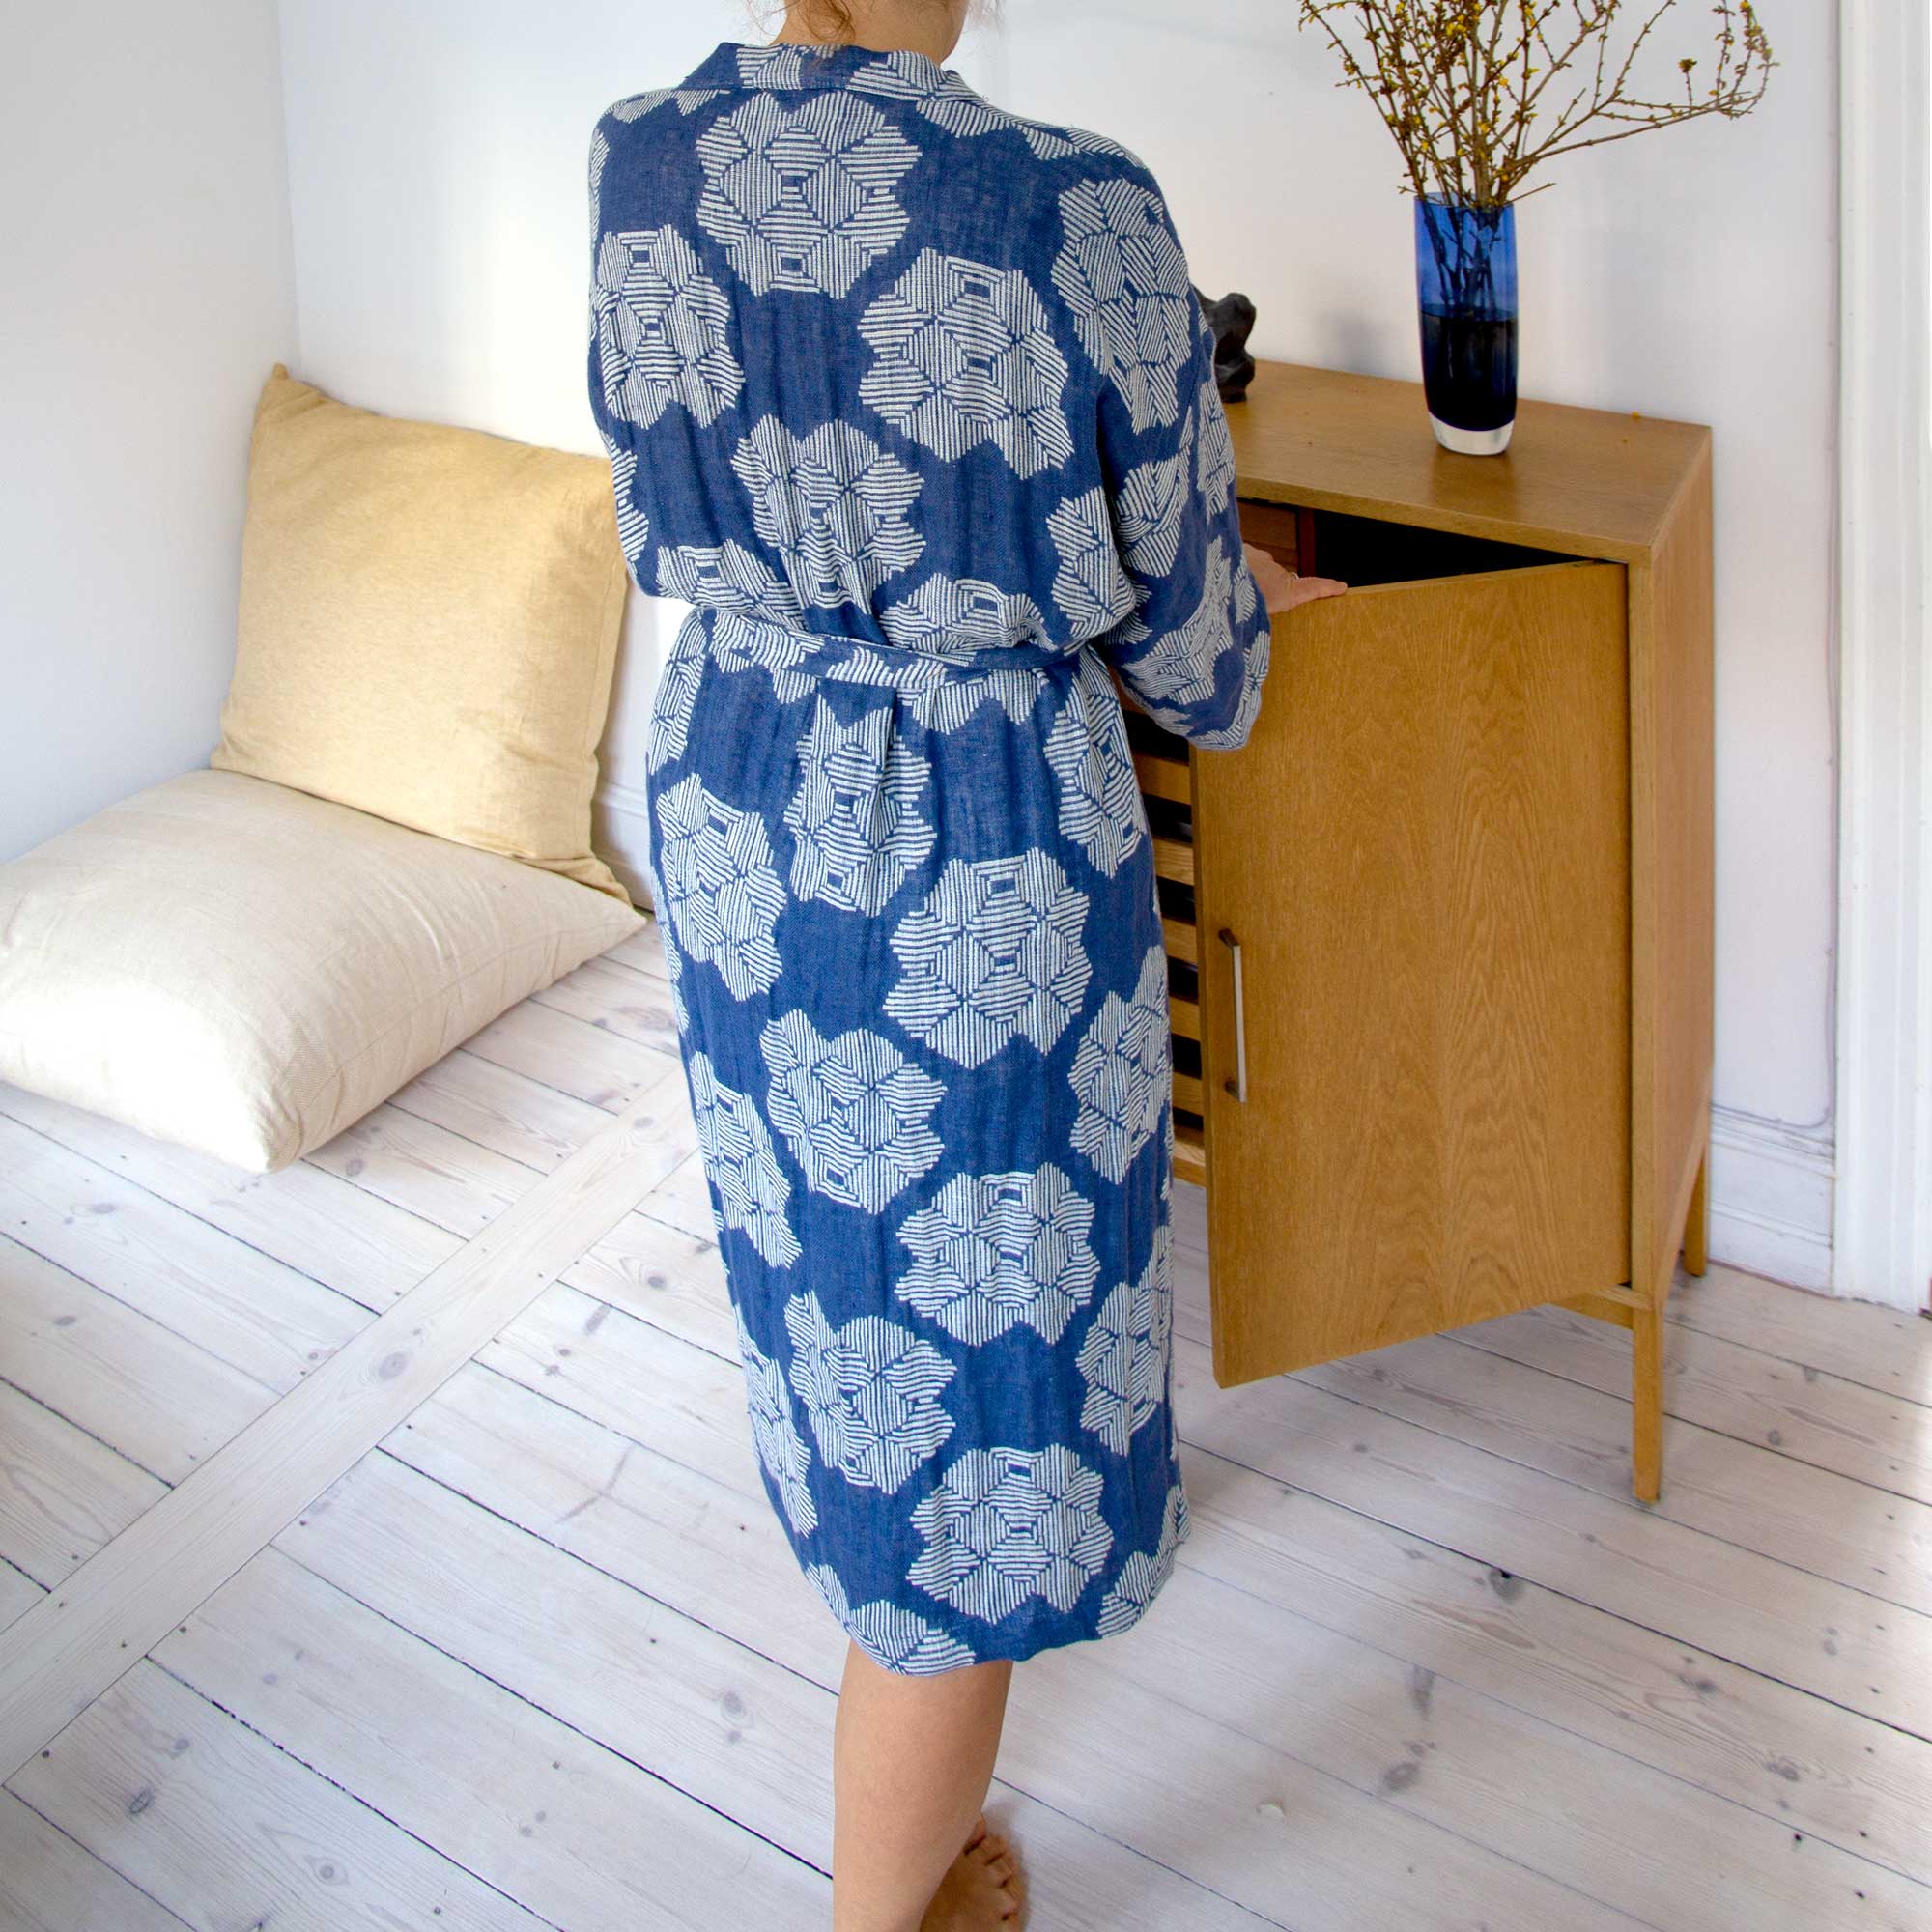 Kimono bathrobe, Desert roses blue, pure linen, design by Anne Rosenberg, RosenbergCph